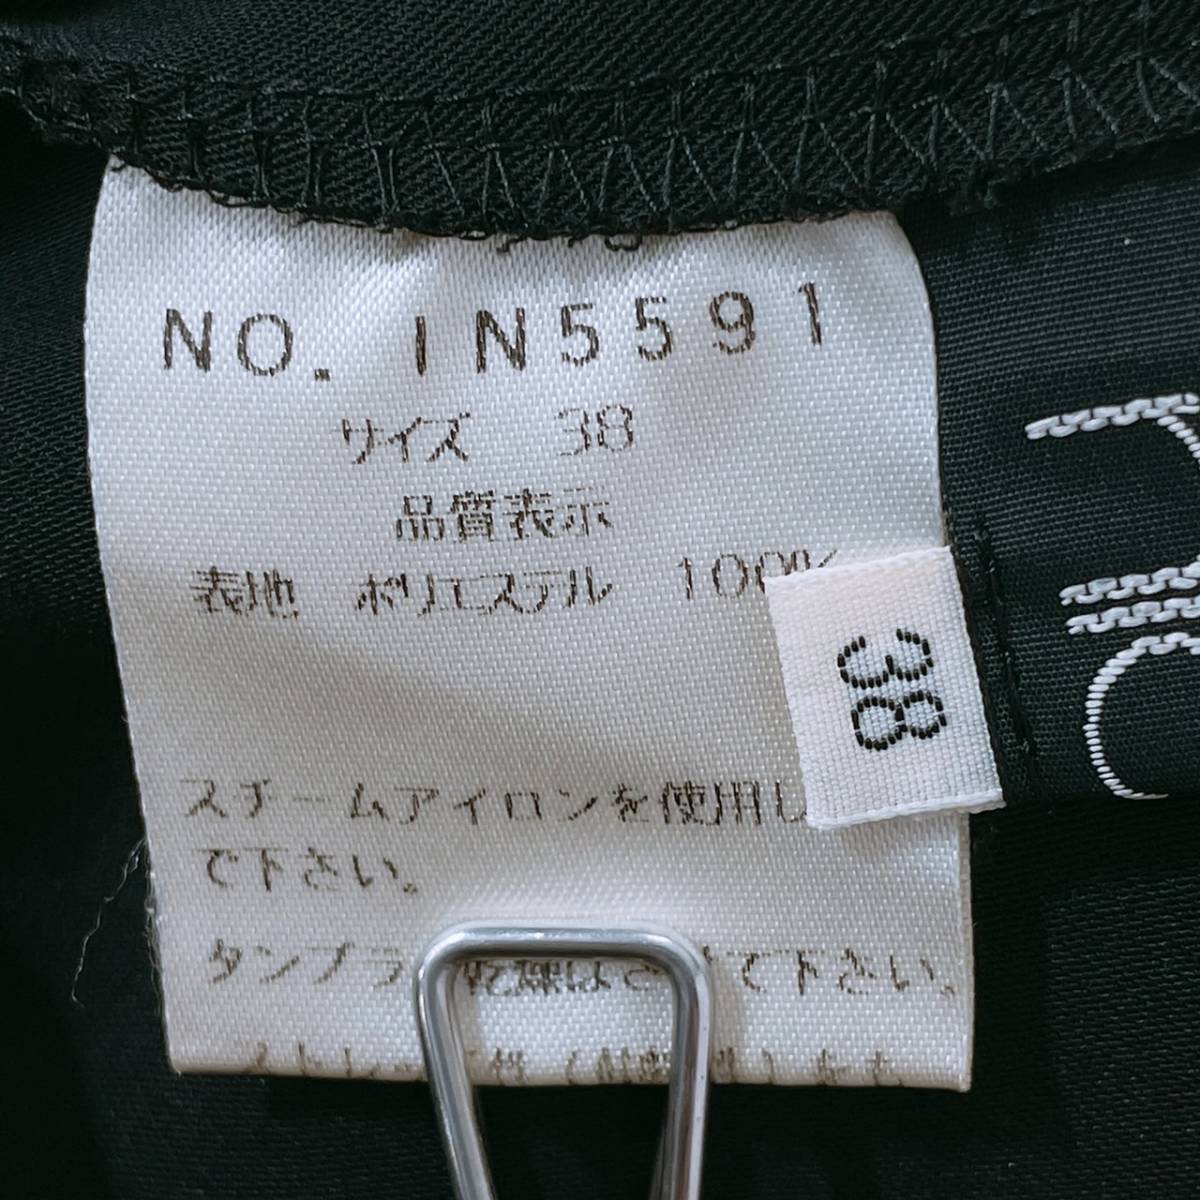 【15656】 NICOLE ニコル パンツ ロングパンツ スラックス レディース ブラック 黒 サイドジッパー ストレッチ性 日本製 38 Mサイズ相当